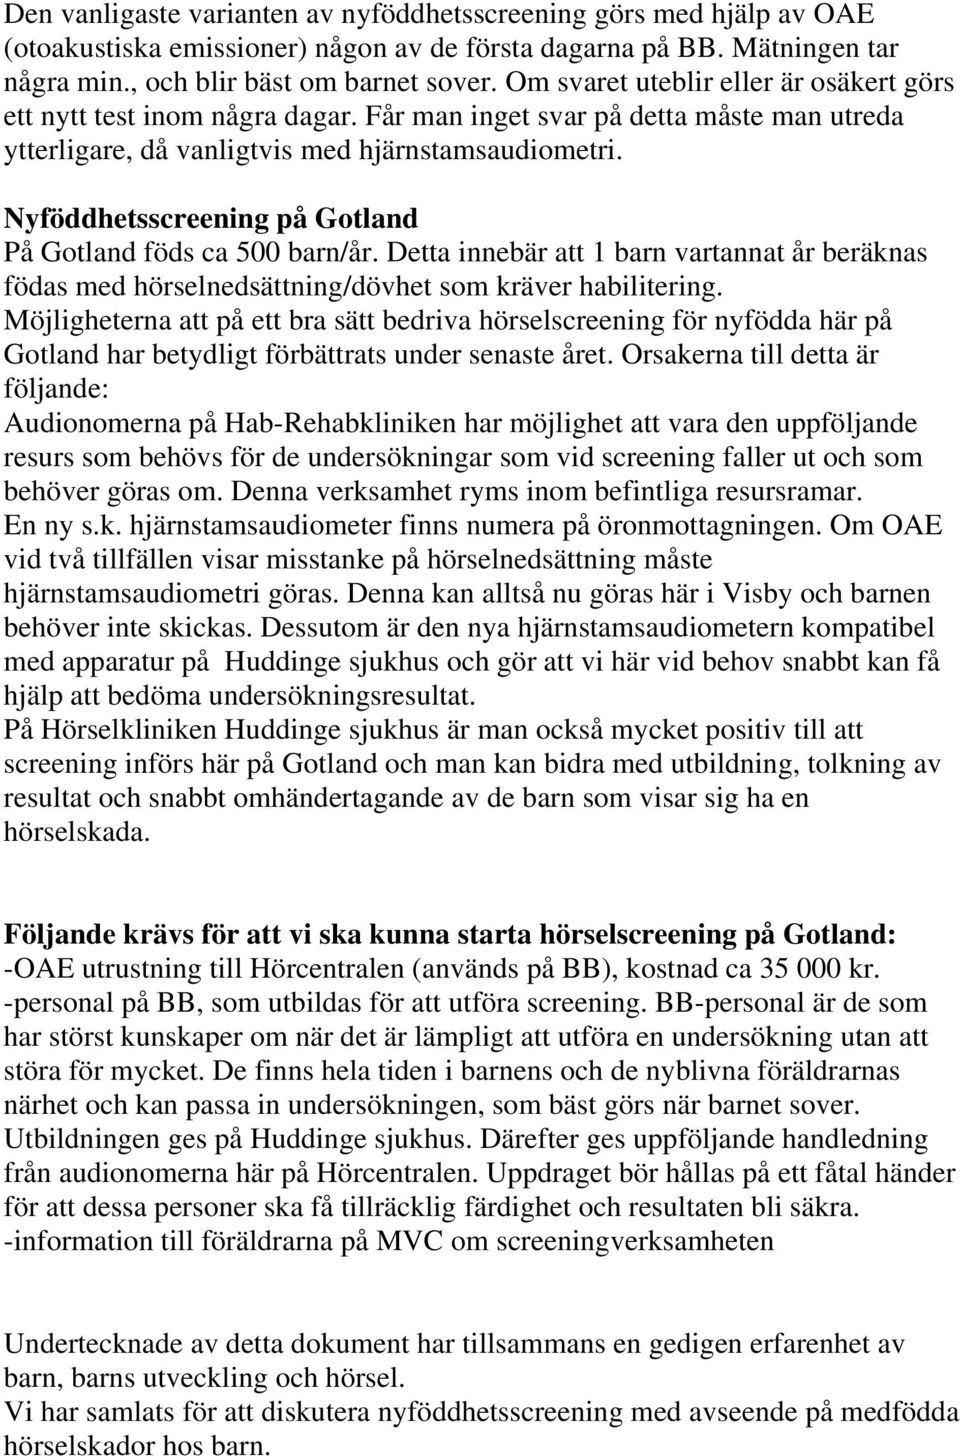 Nyföddhetsscreening på Gotland På Gotland föds ca 500 barn/år. Detta innebär att 1 barn vartannat år beräknas födas med hörselnedsättning/dövhet som kräver habilitering.